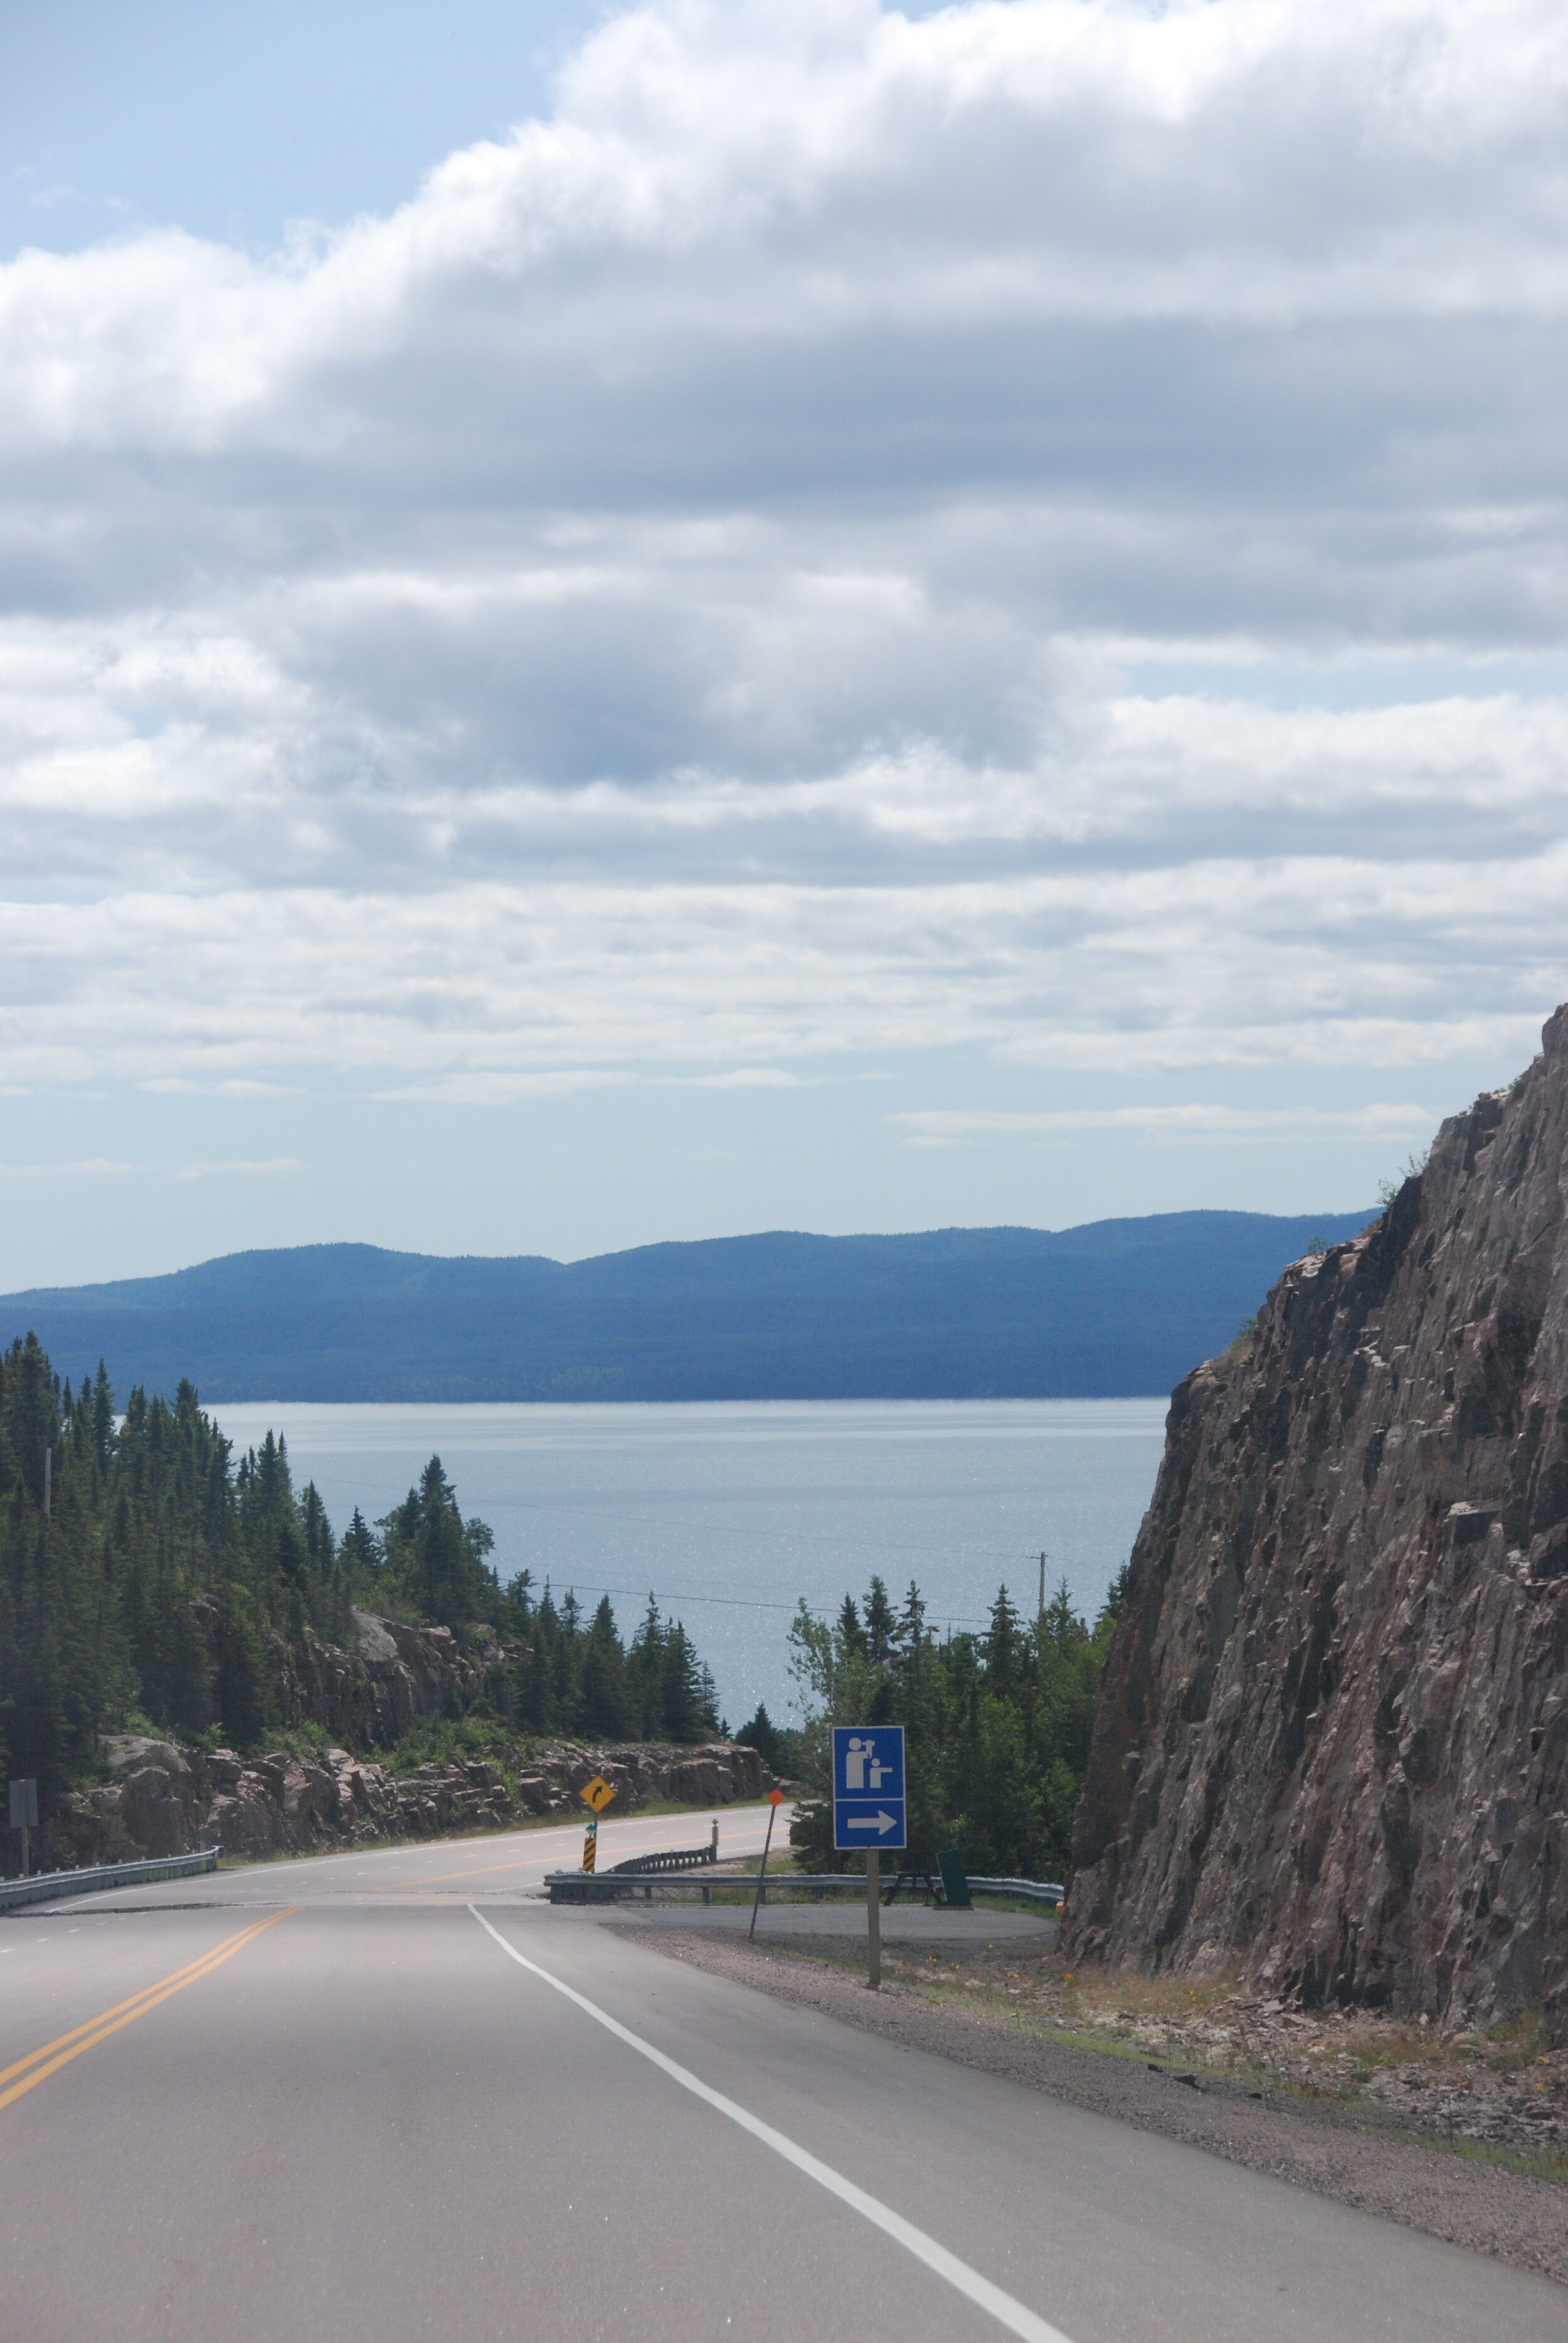 Gorgeous views of Lake Superior